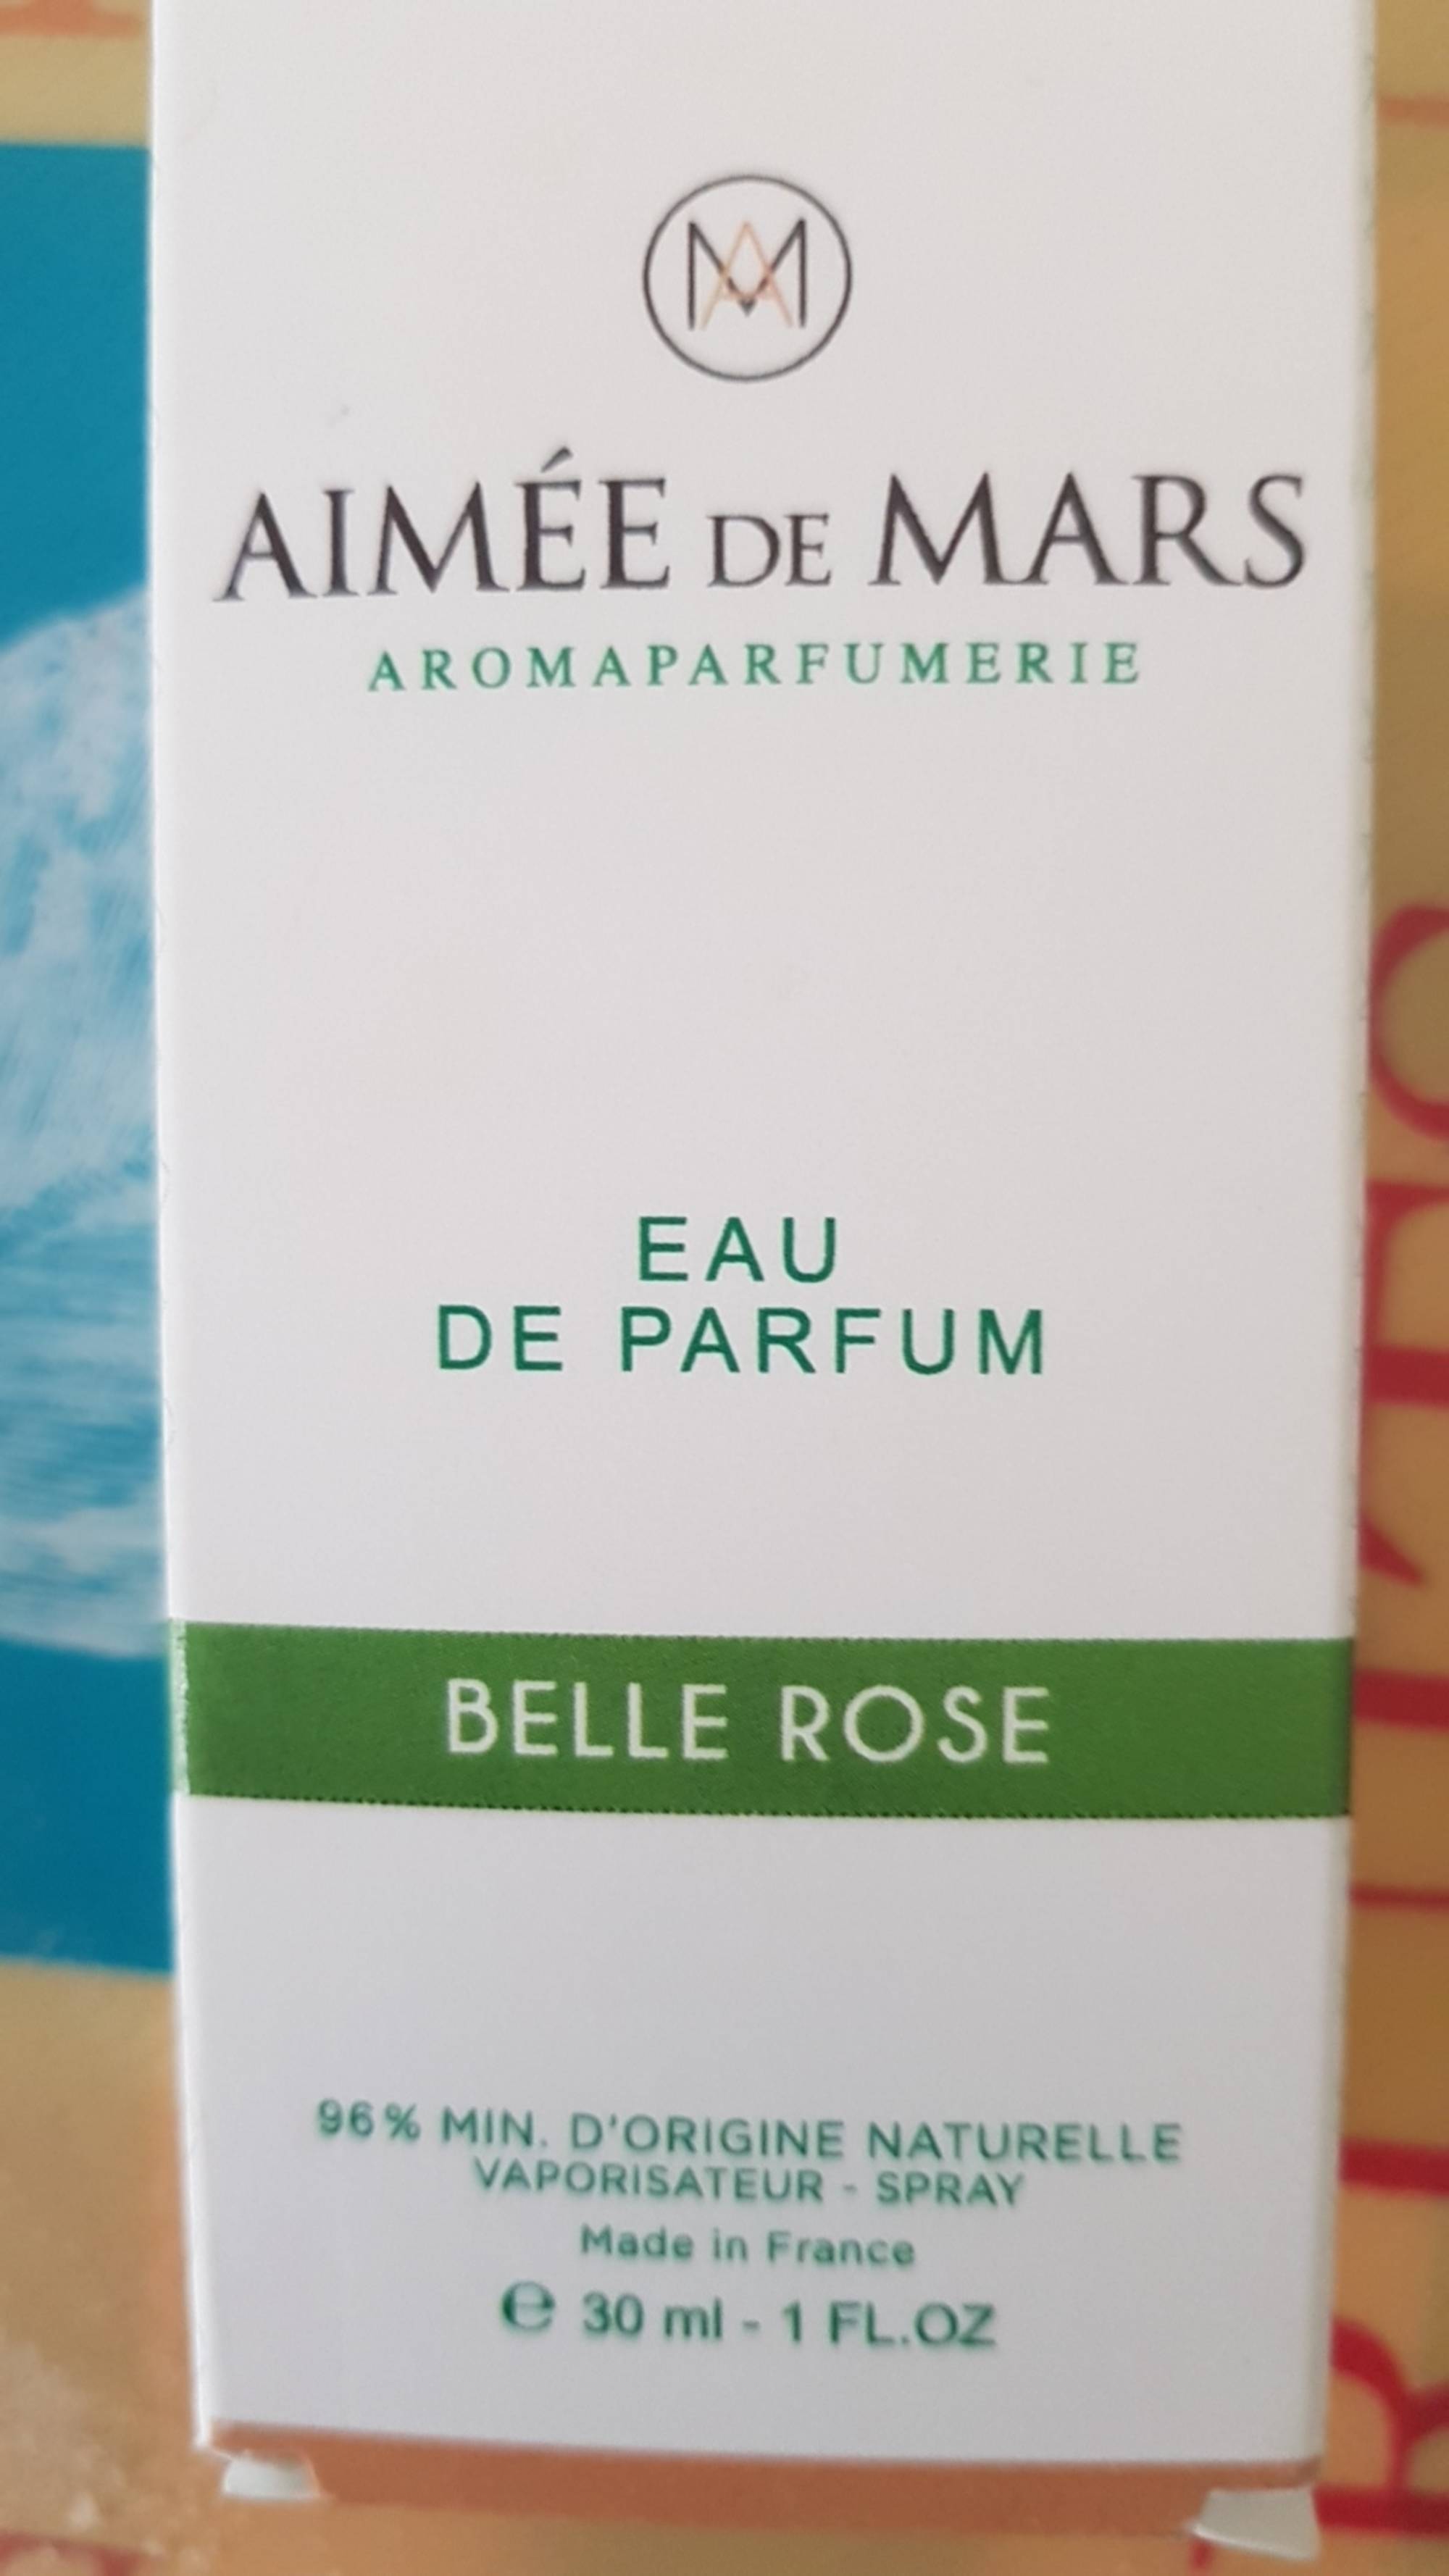 AIMÉE DE MARS - Belle rose - Eau de parfum 